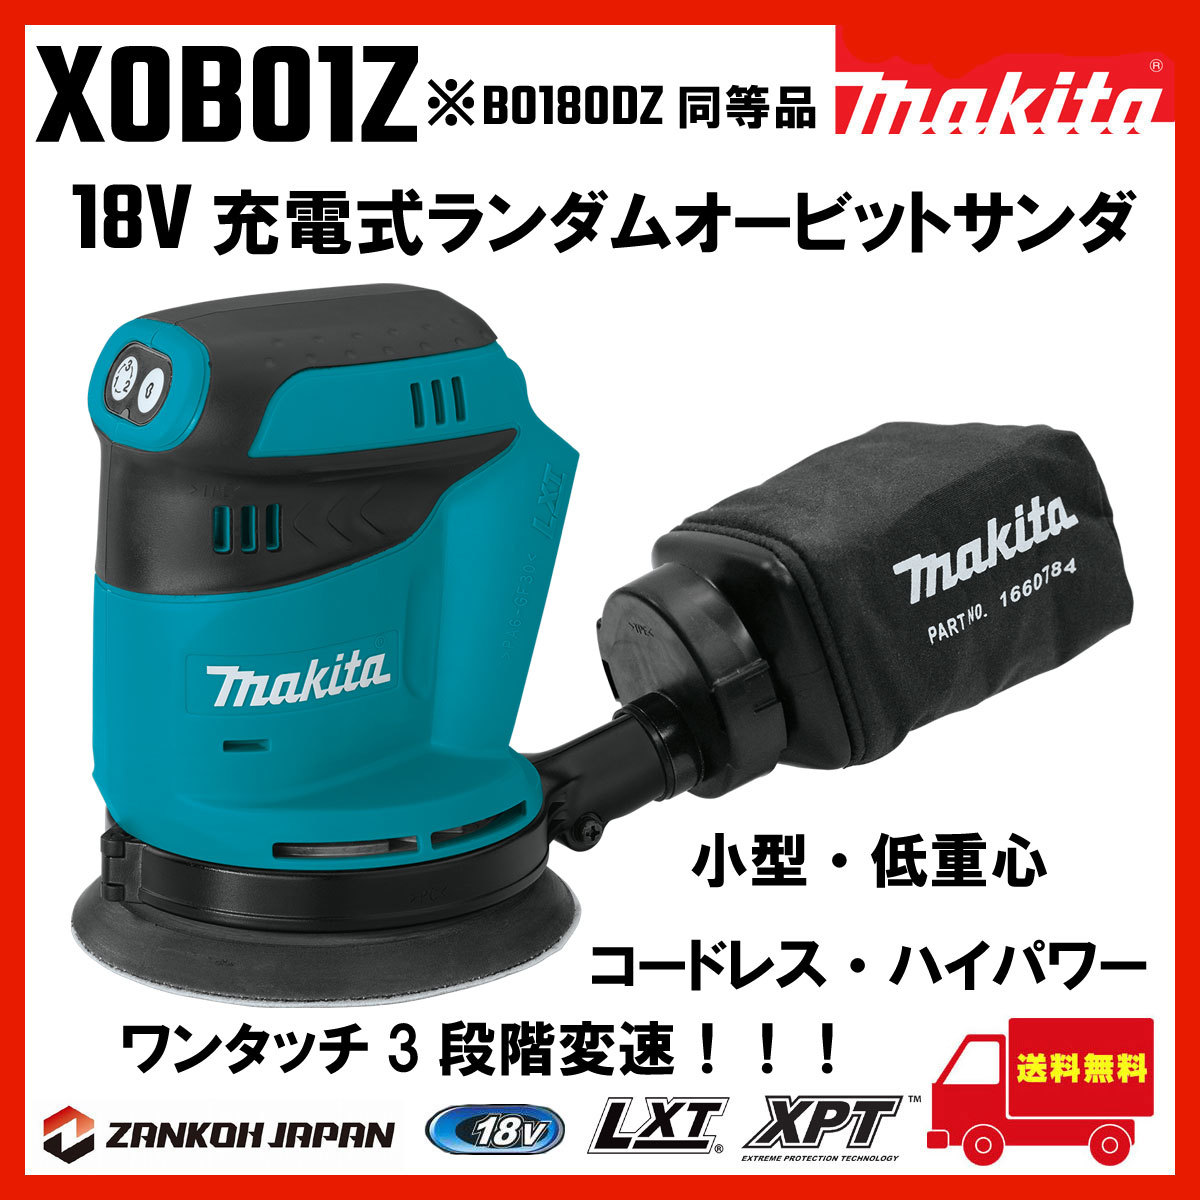 マキタ ランダムオービット サンダ 充電式 18V MAKITA 18V ペーパー寸法 125mm BO180DZ 同等品 XOB01Z d